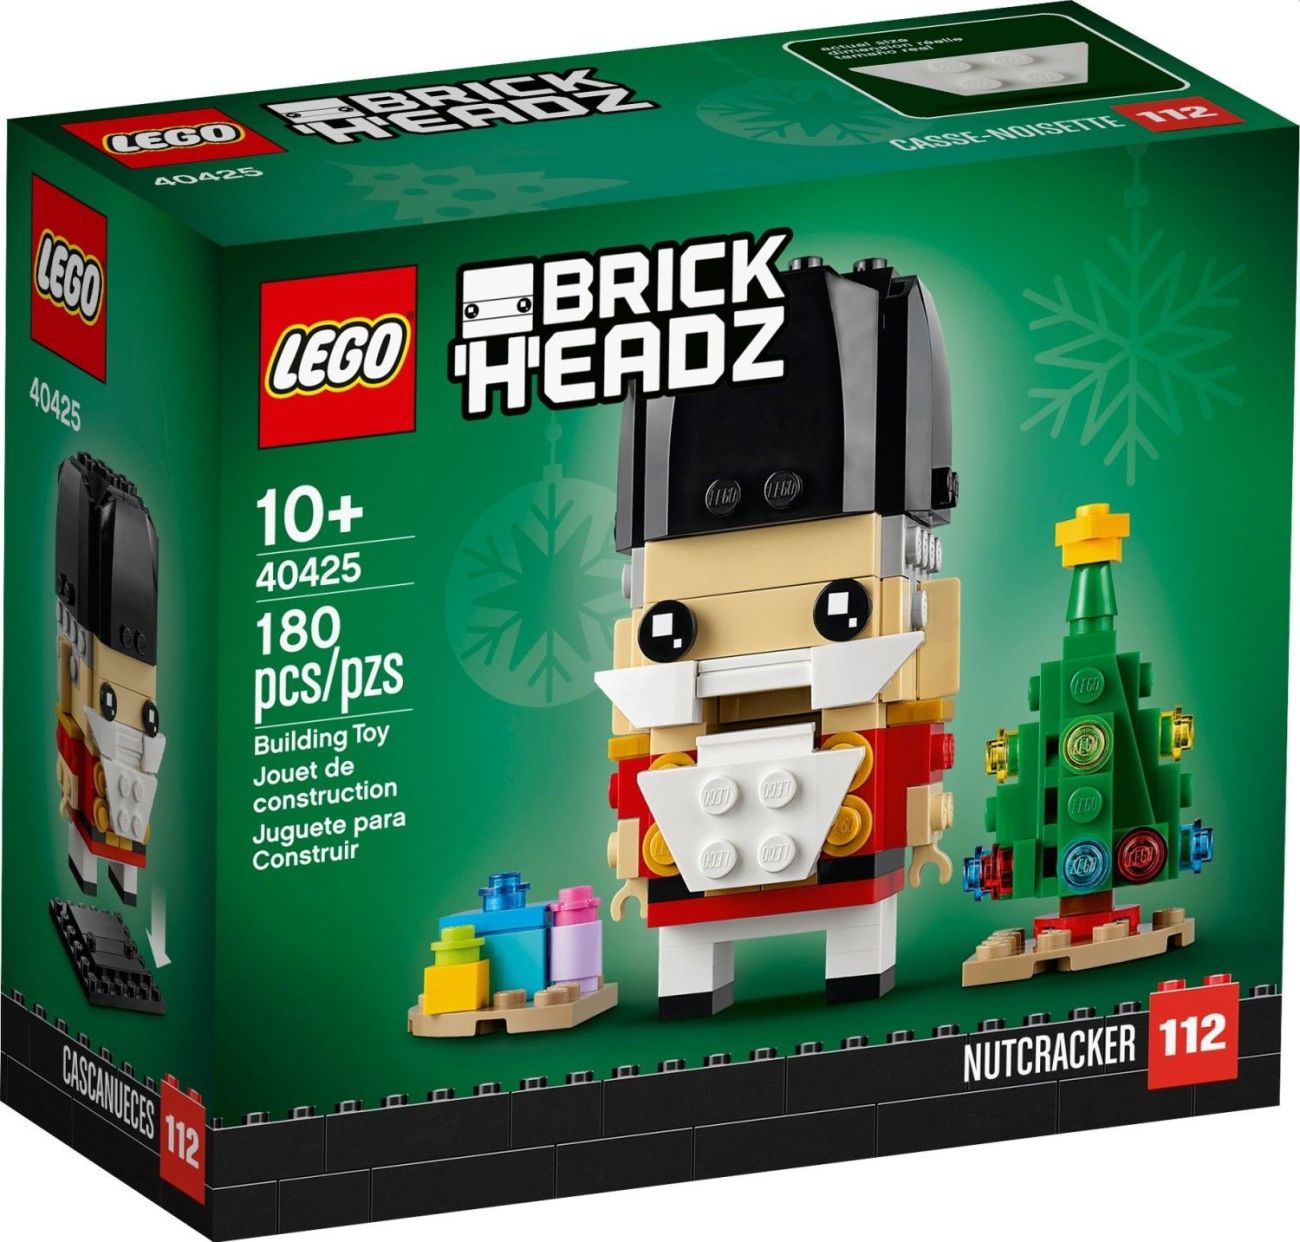 LEGO BrickHeadz: Neuheiten im Februar 2020